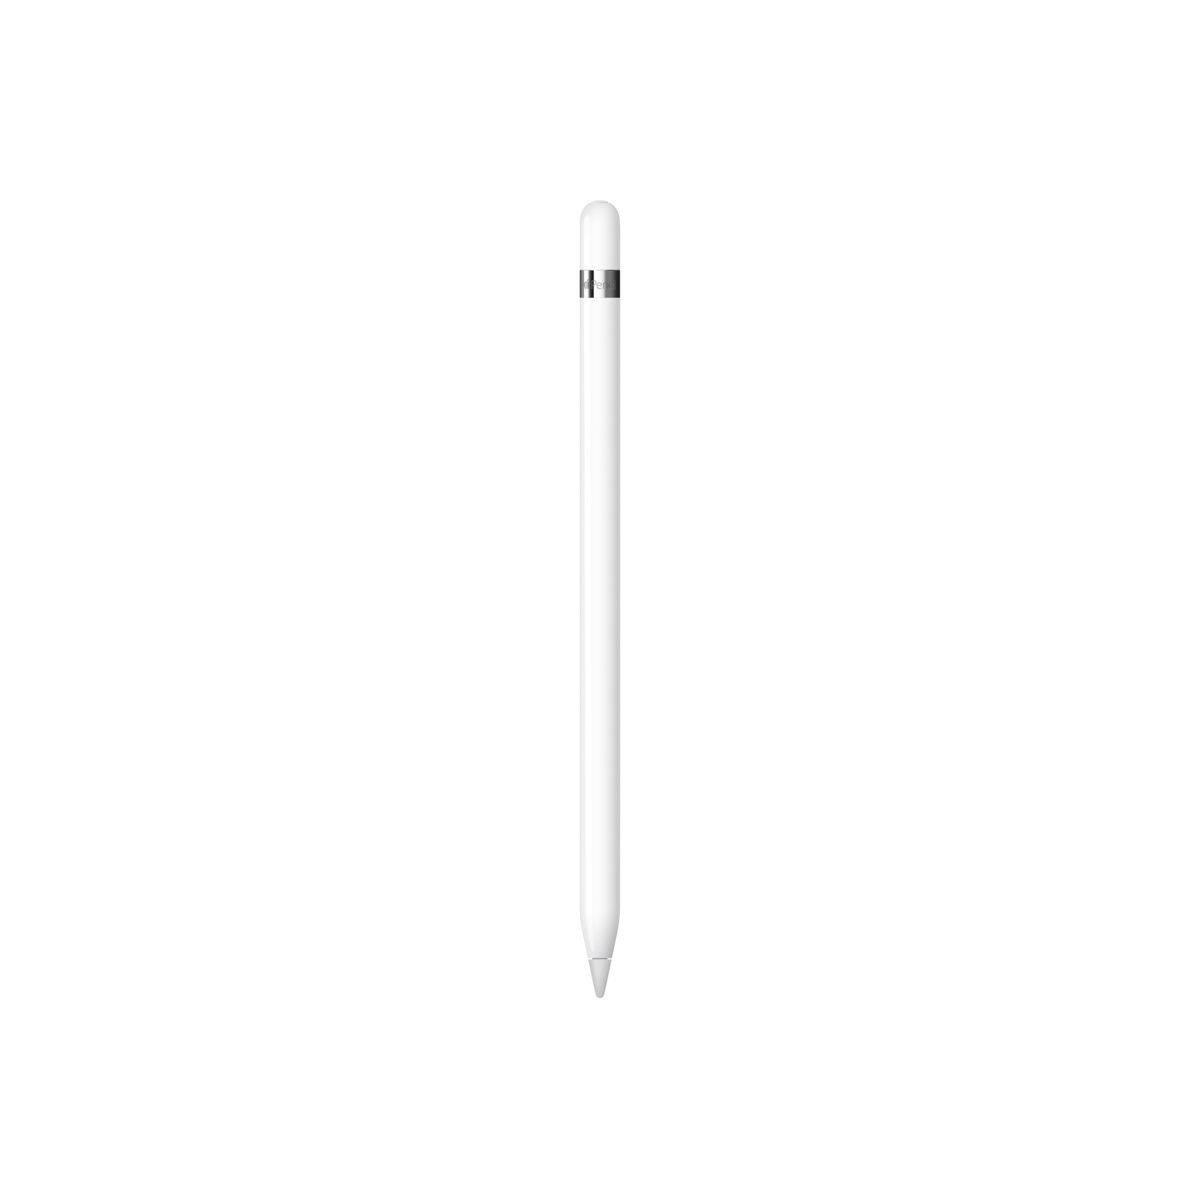 Apple Apple Pencil erste Generation